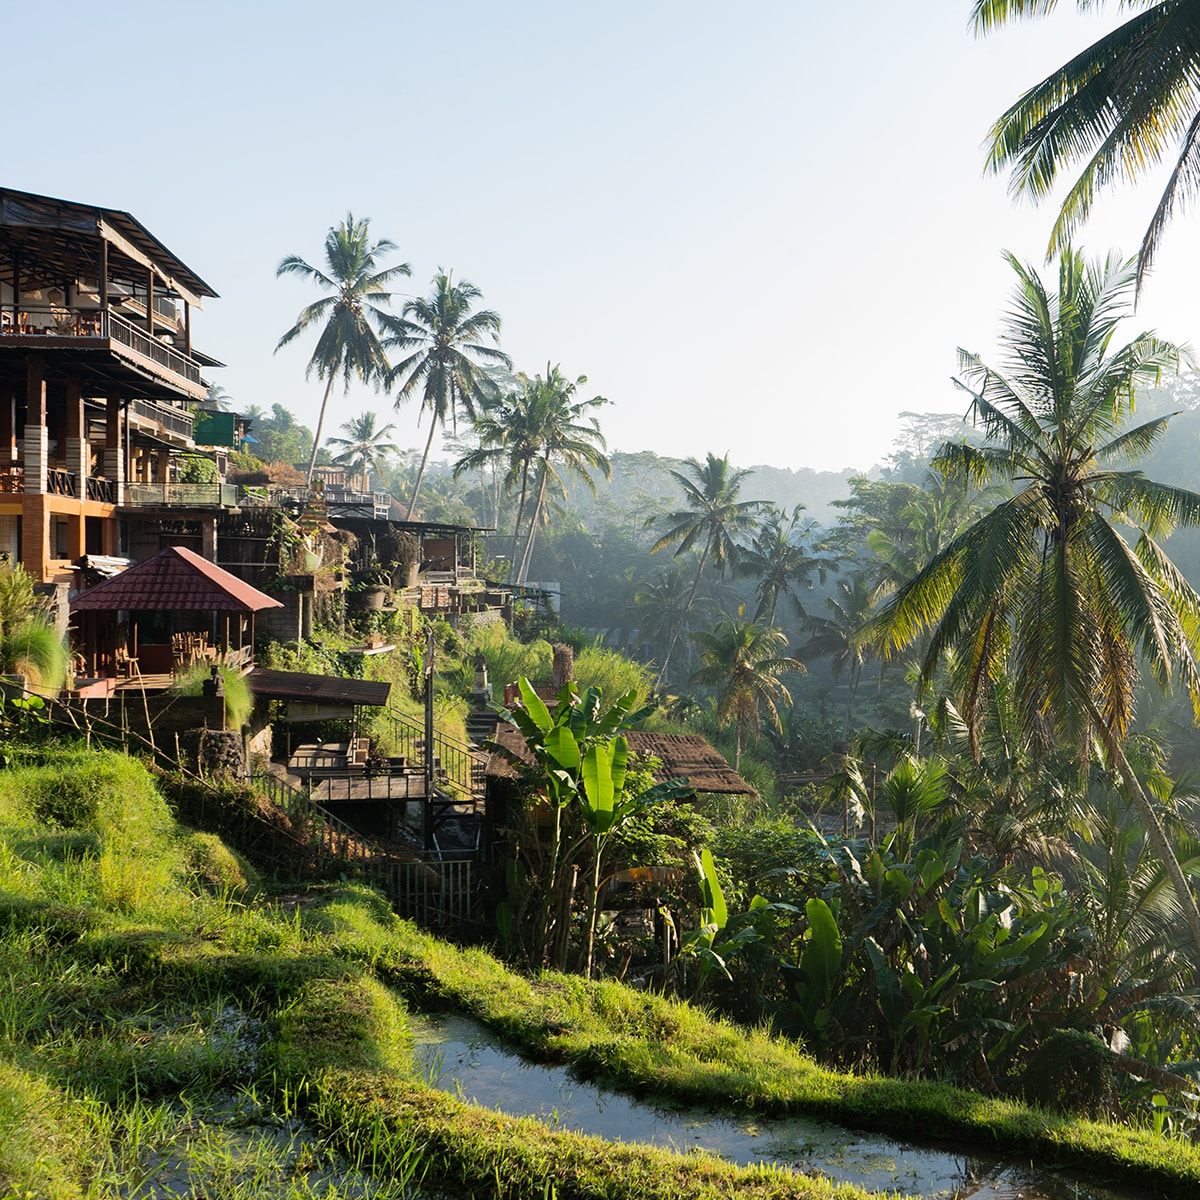 Села ма. Мас, Убуд, Гианьяр, Бали.. Деревня мас Бали. Убуд деревня ремесленников. Убуд Бали 2021 год.